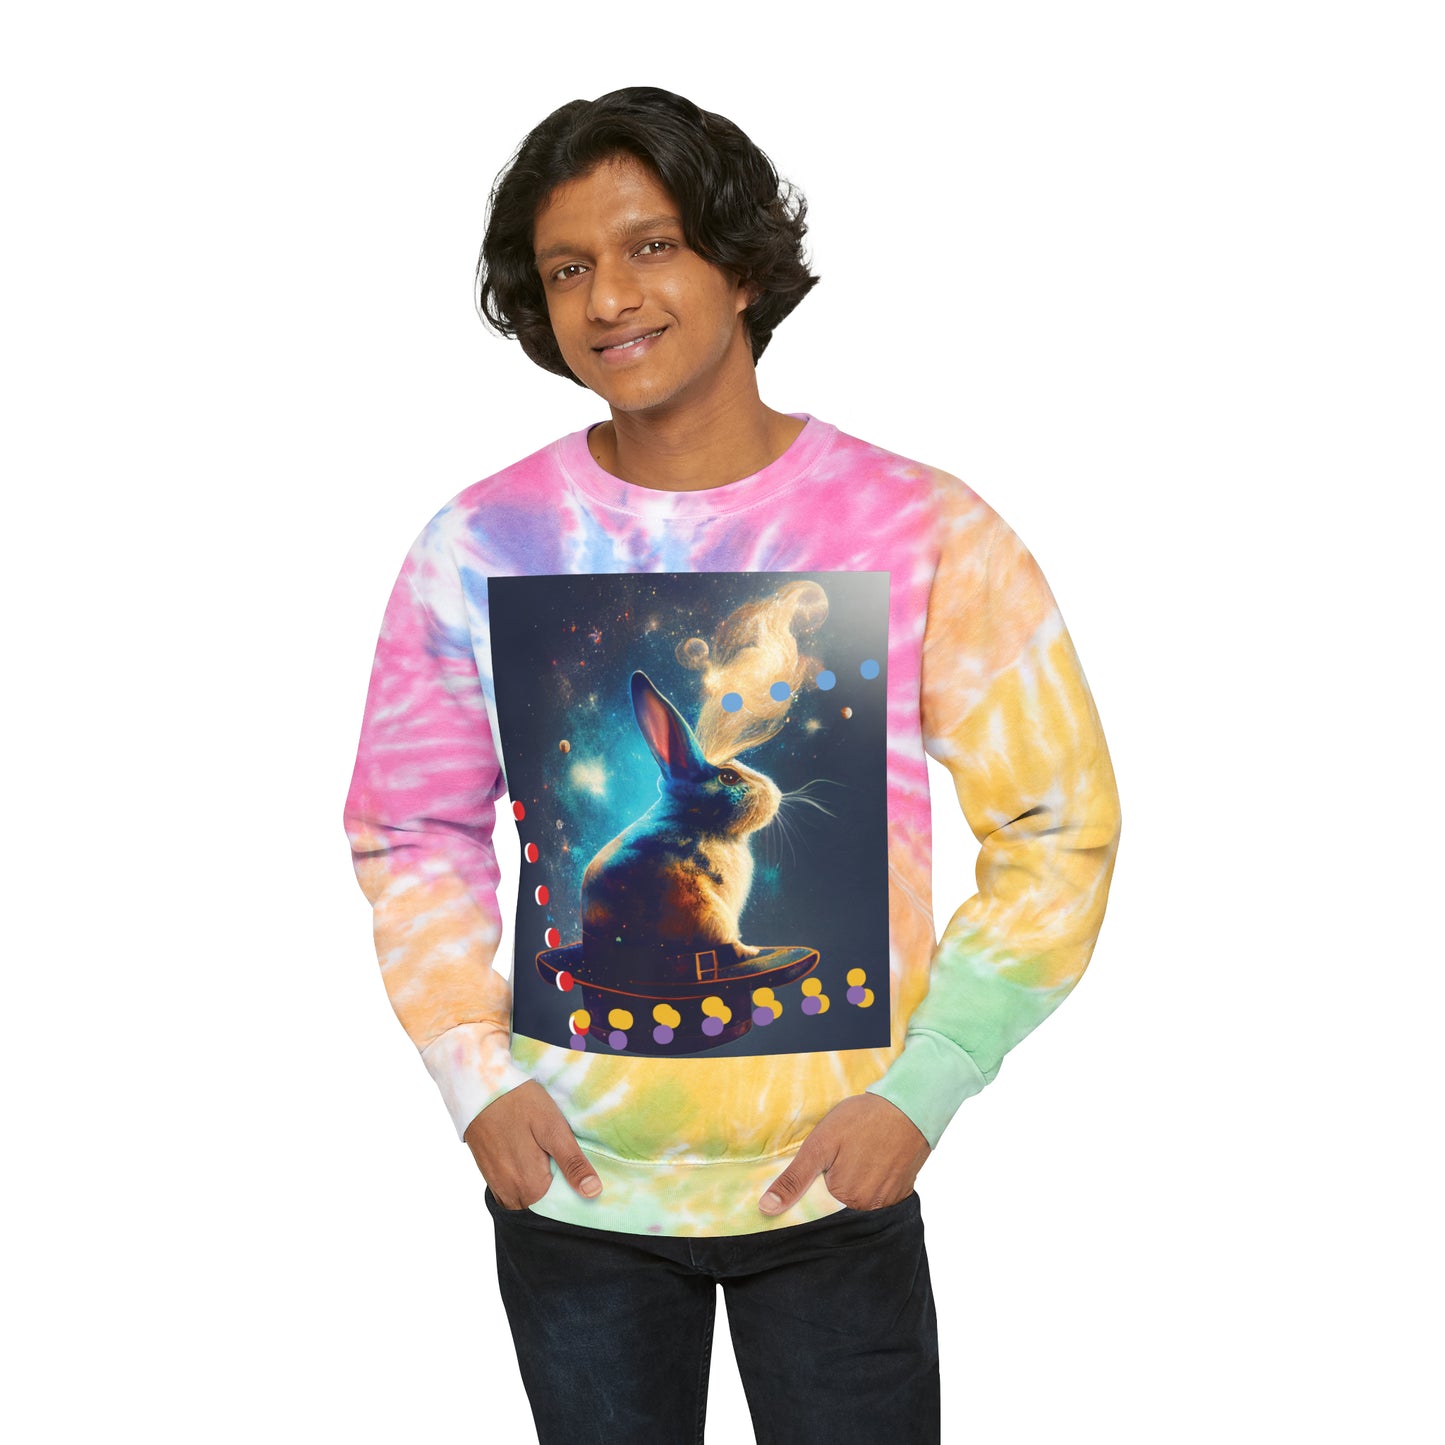 Unisex Tie-Dye Magic Bunny Sweatshirt